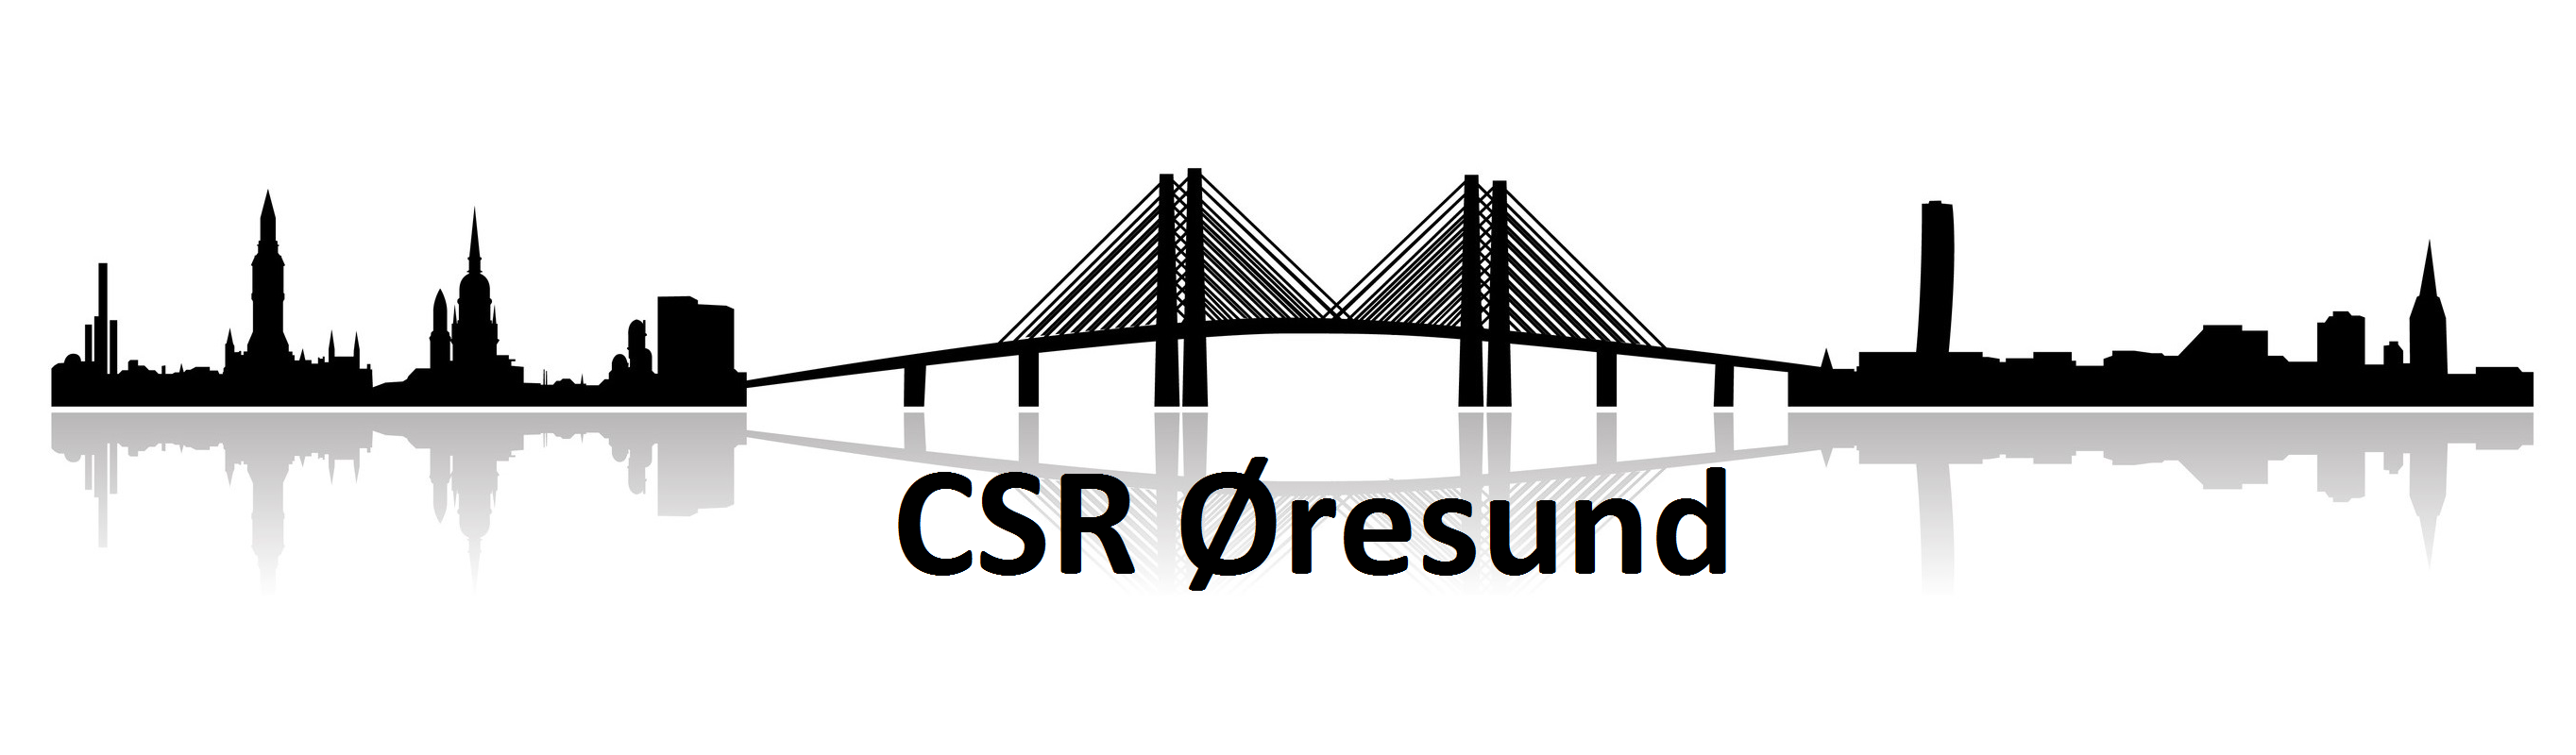 CSR Øresund låg